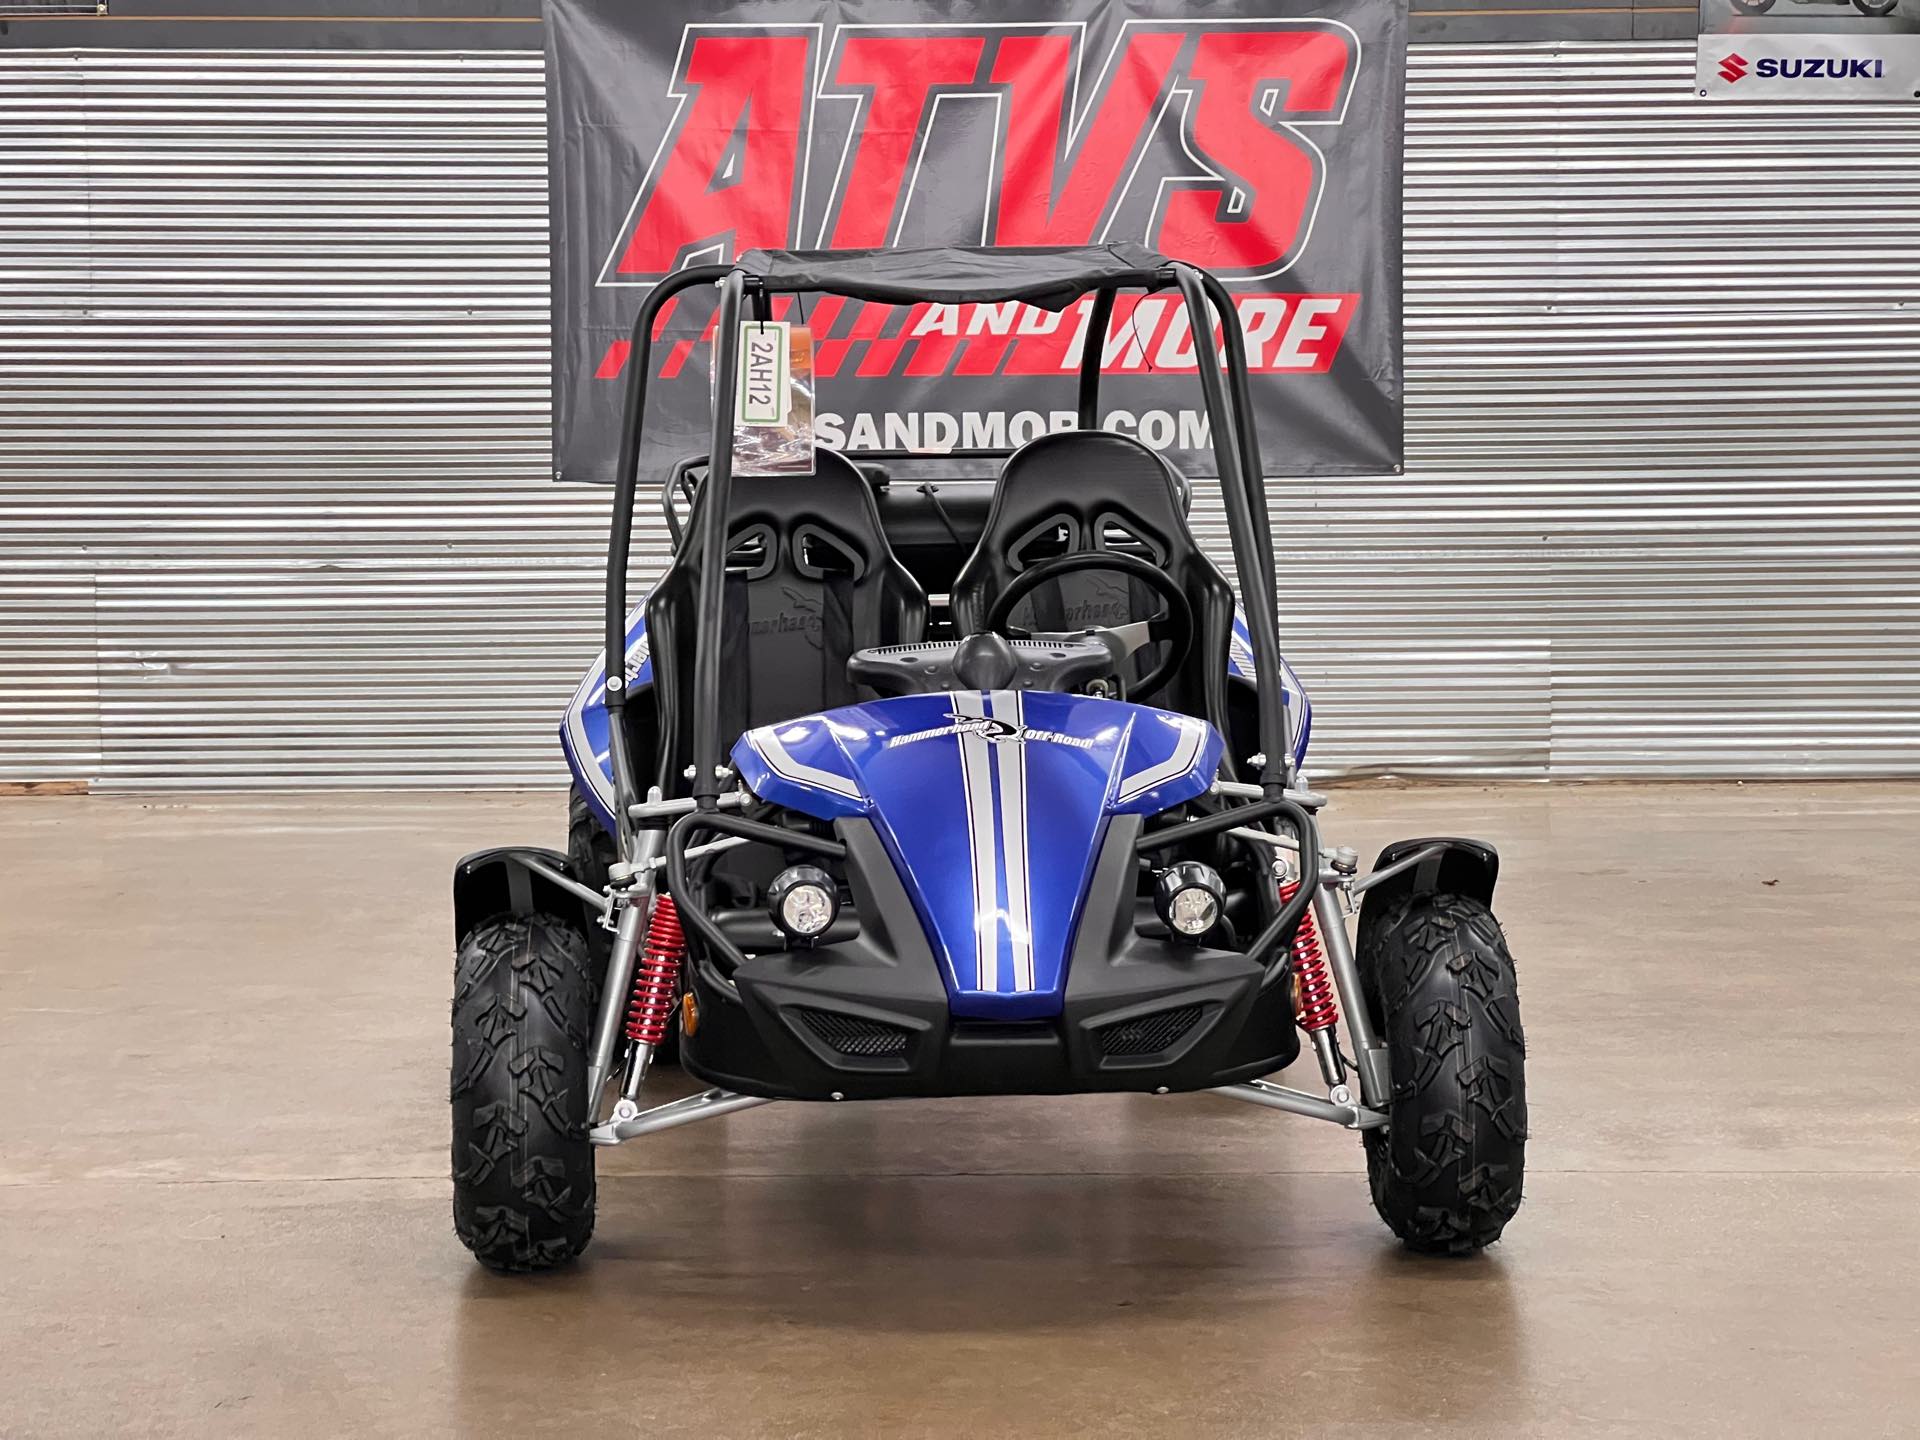 2022 Polaris GTS150 at ATVs and More